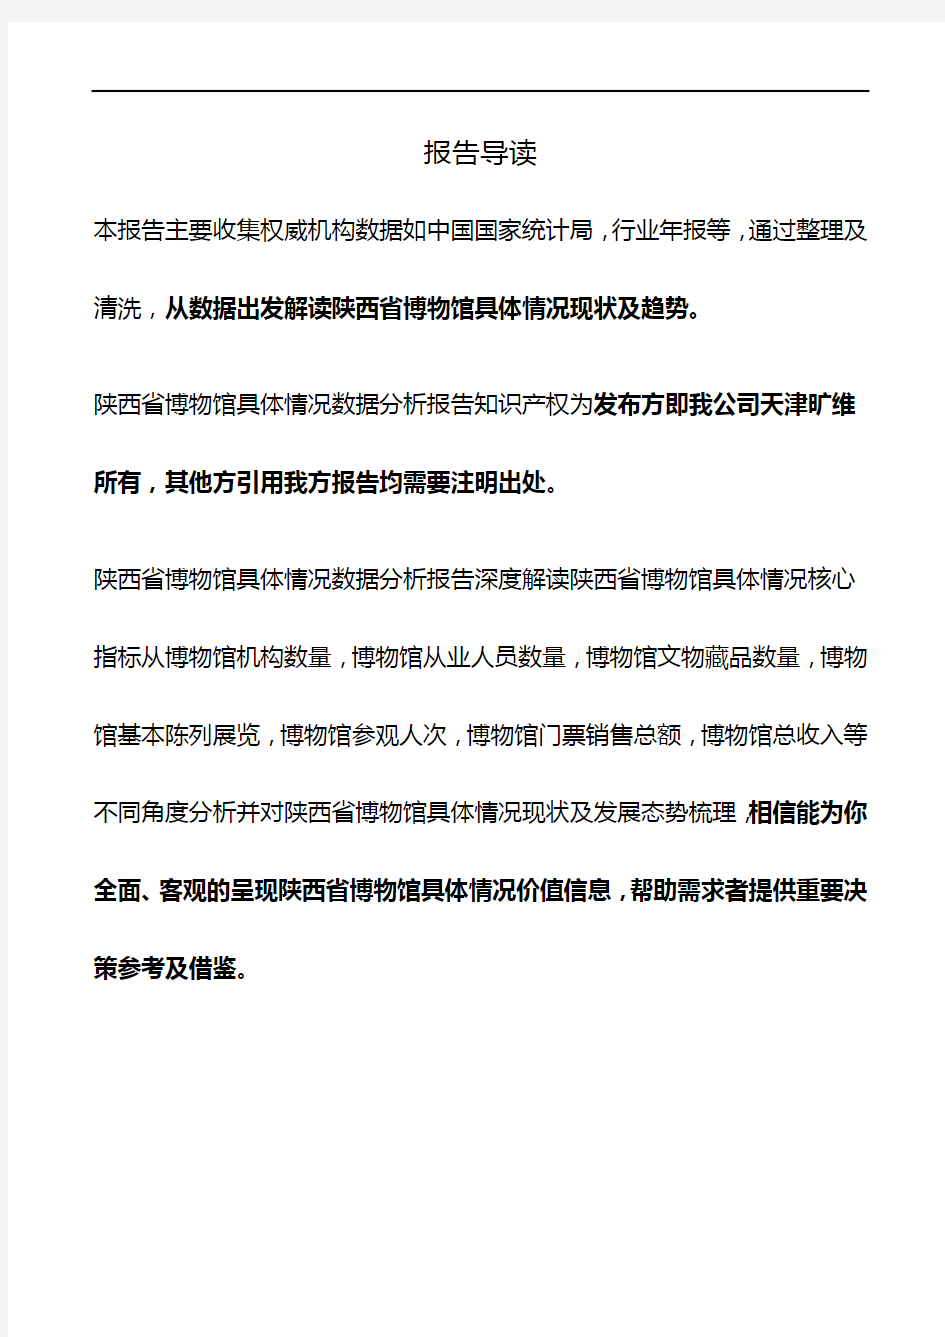 陕西省博物馆具体情况3年数据分析报告2019版